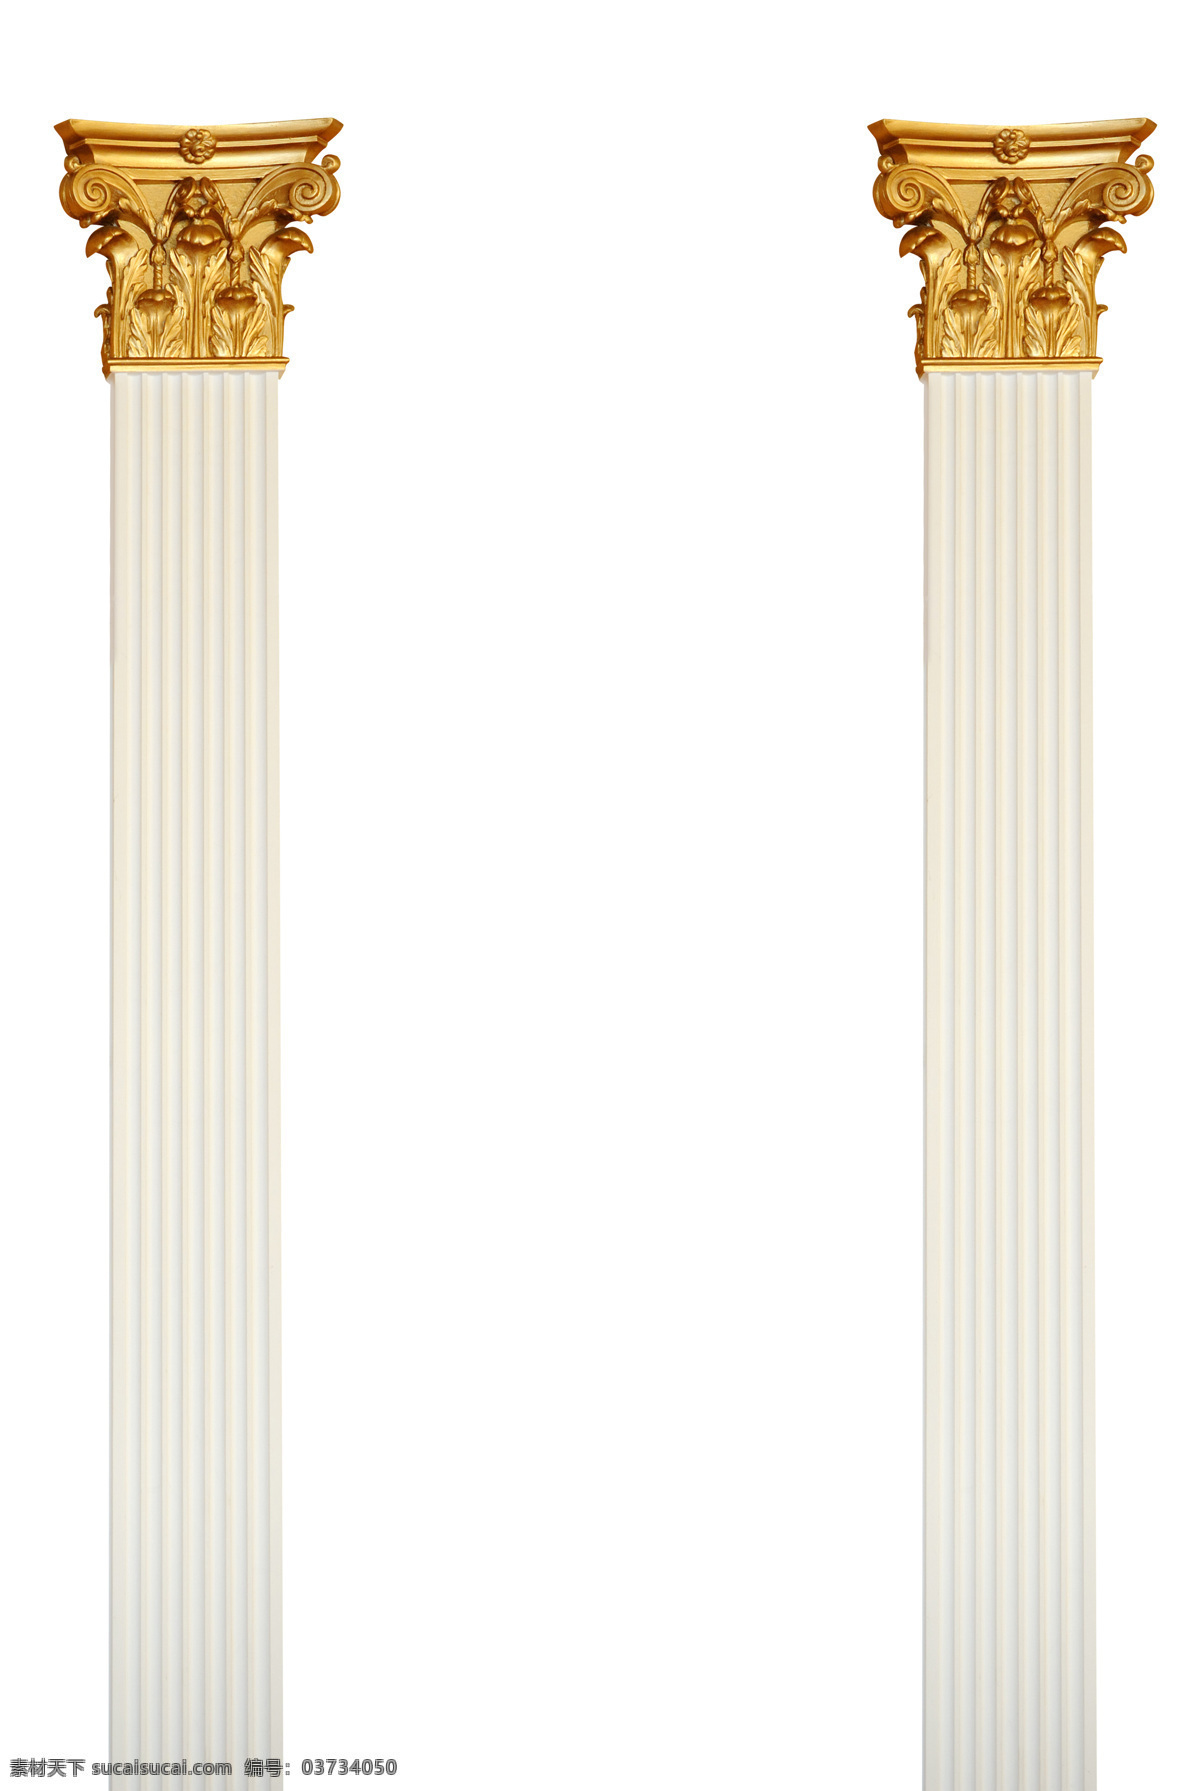 金色 植物 卷 纹 罗马柱 国外建筑 欧式建筑 建筑物 古典建筑 石柱 柱子 建筑设计 其他类别 环境家居 白色